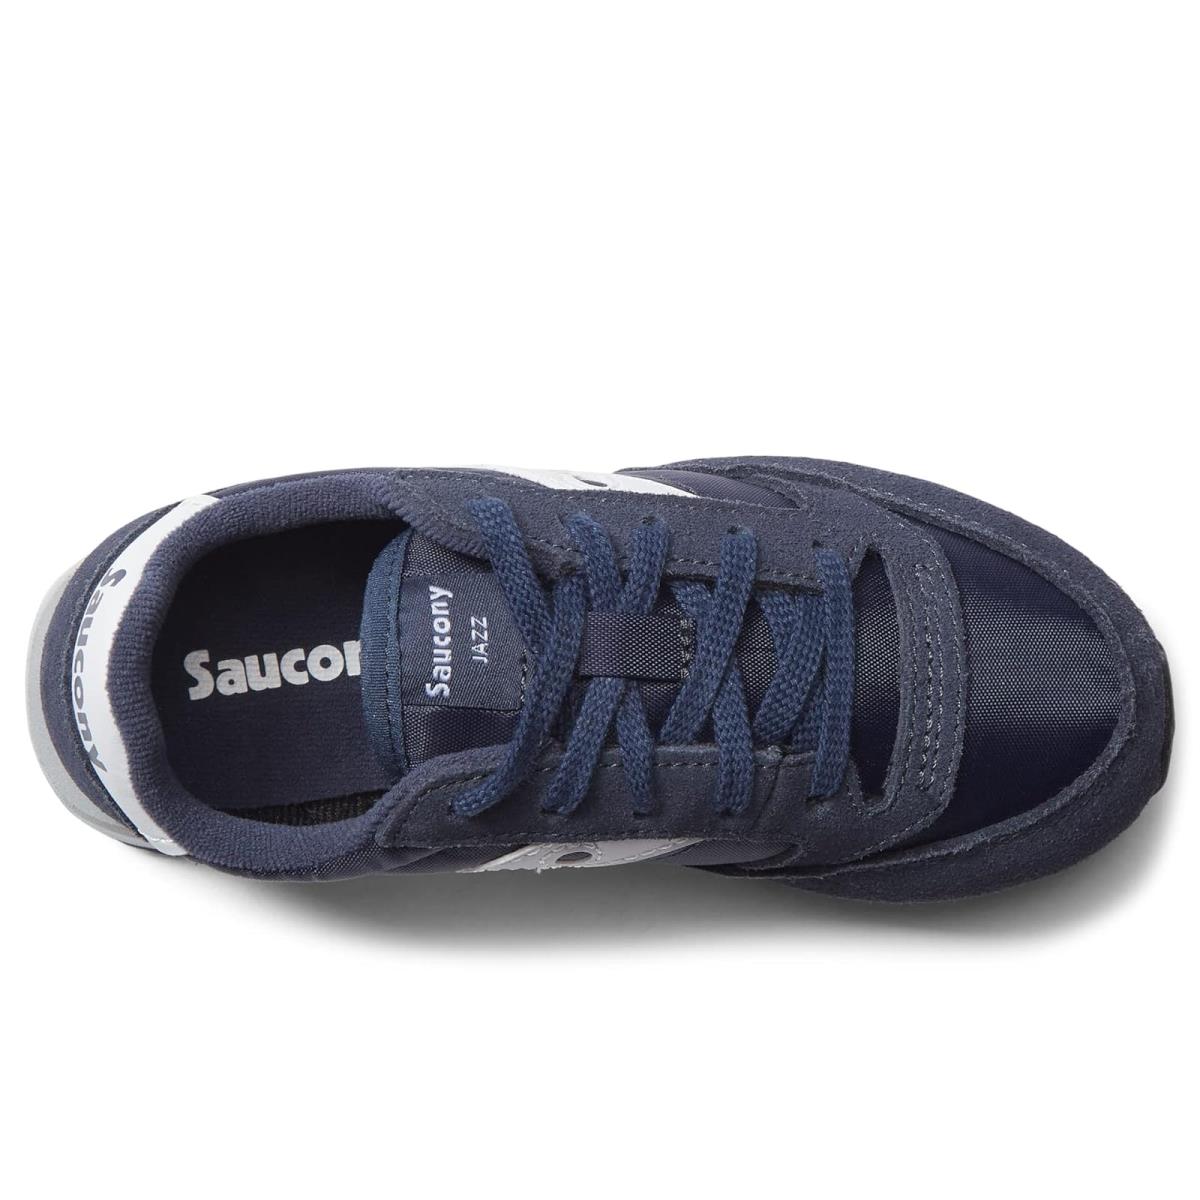 Saucony shoes  1